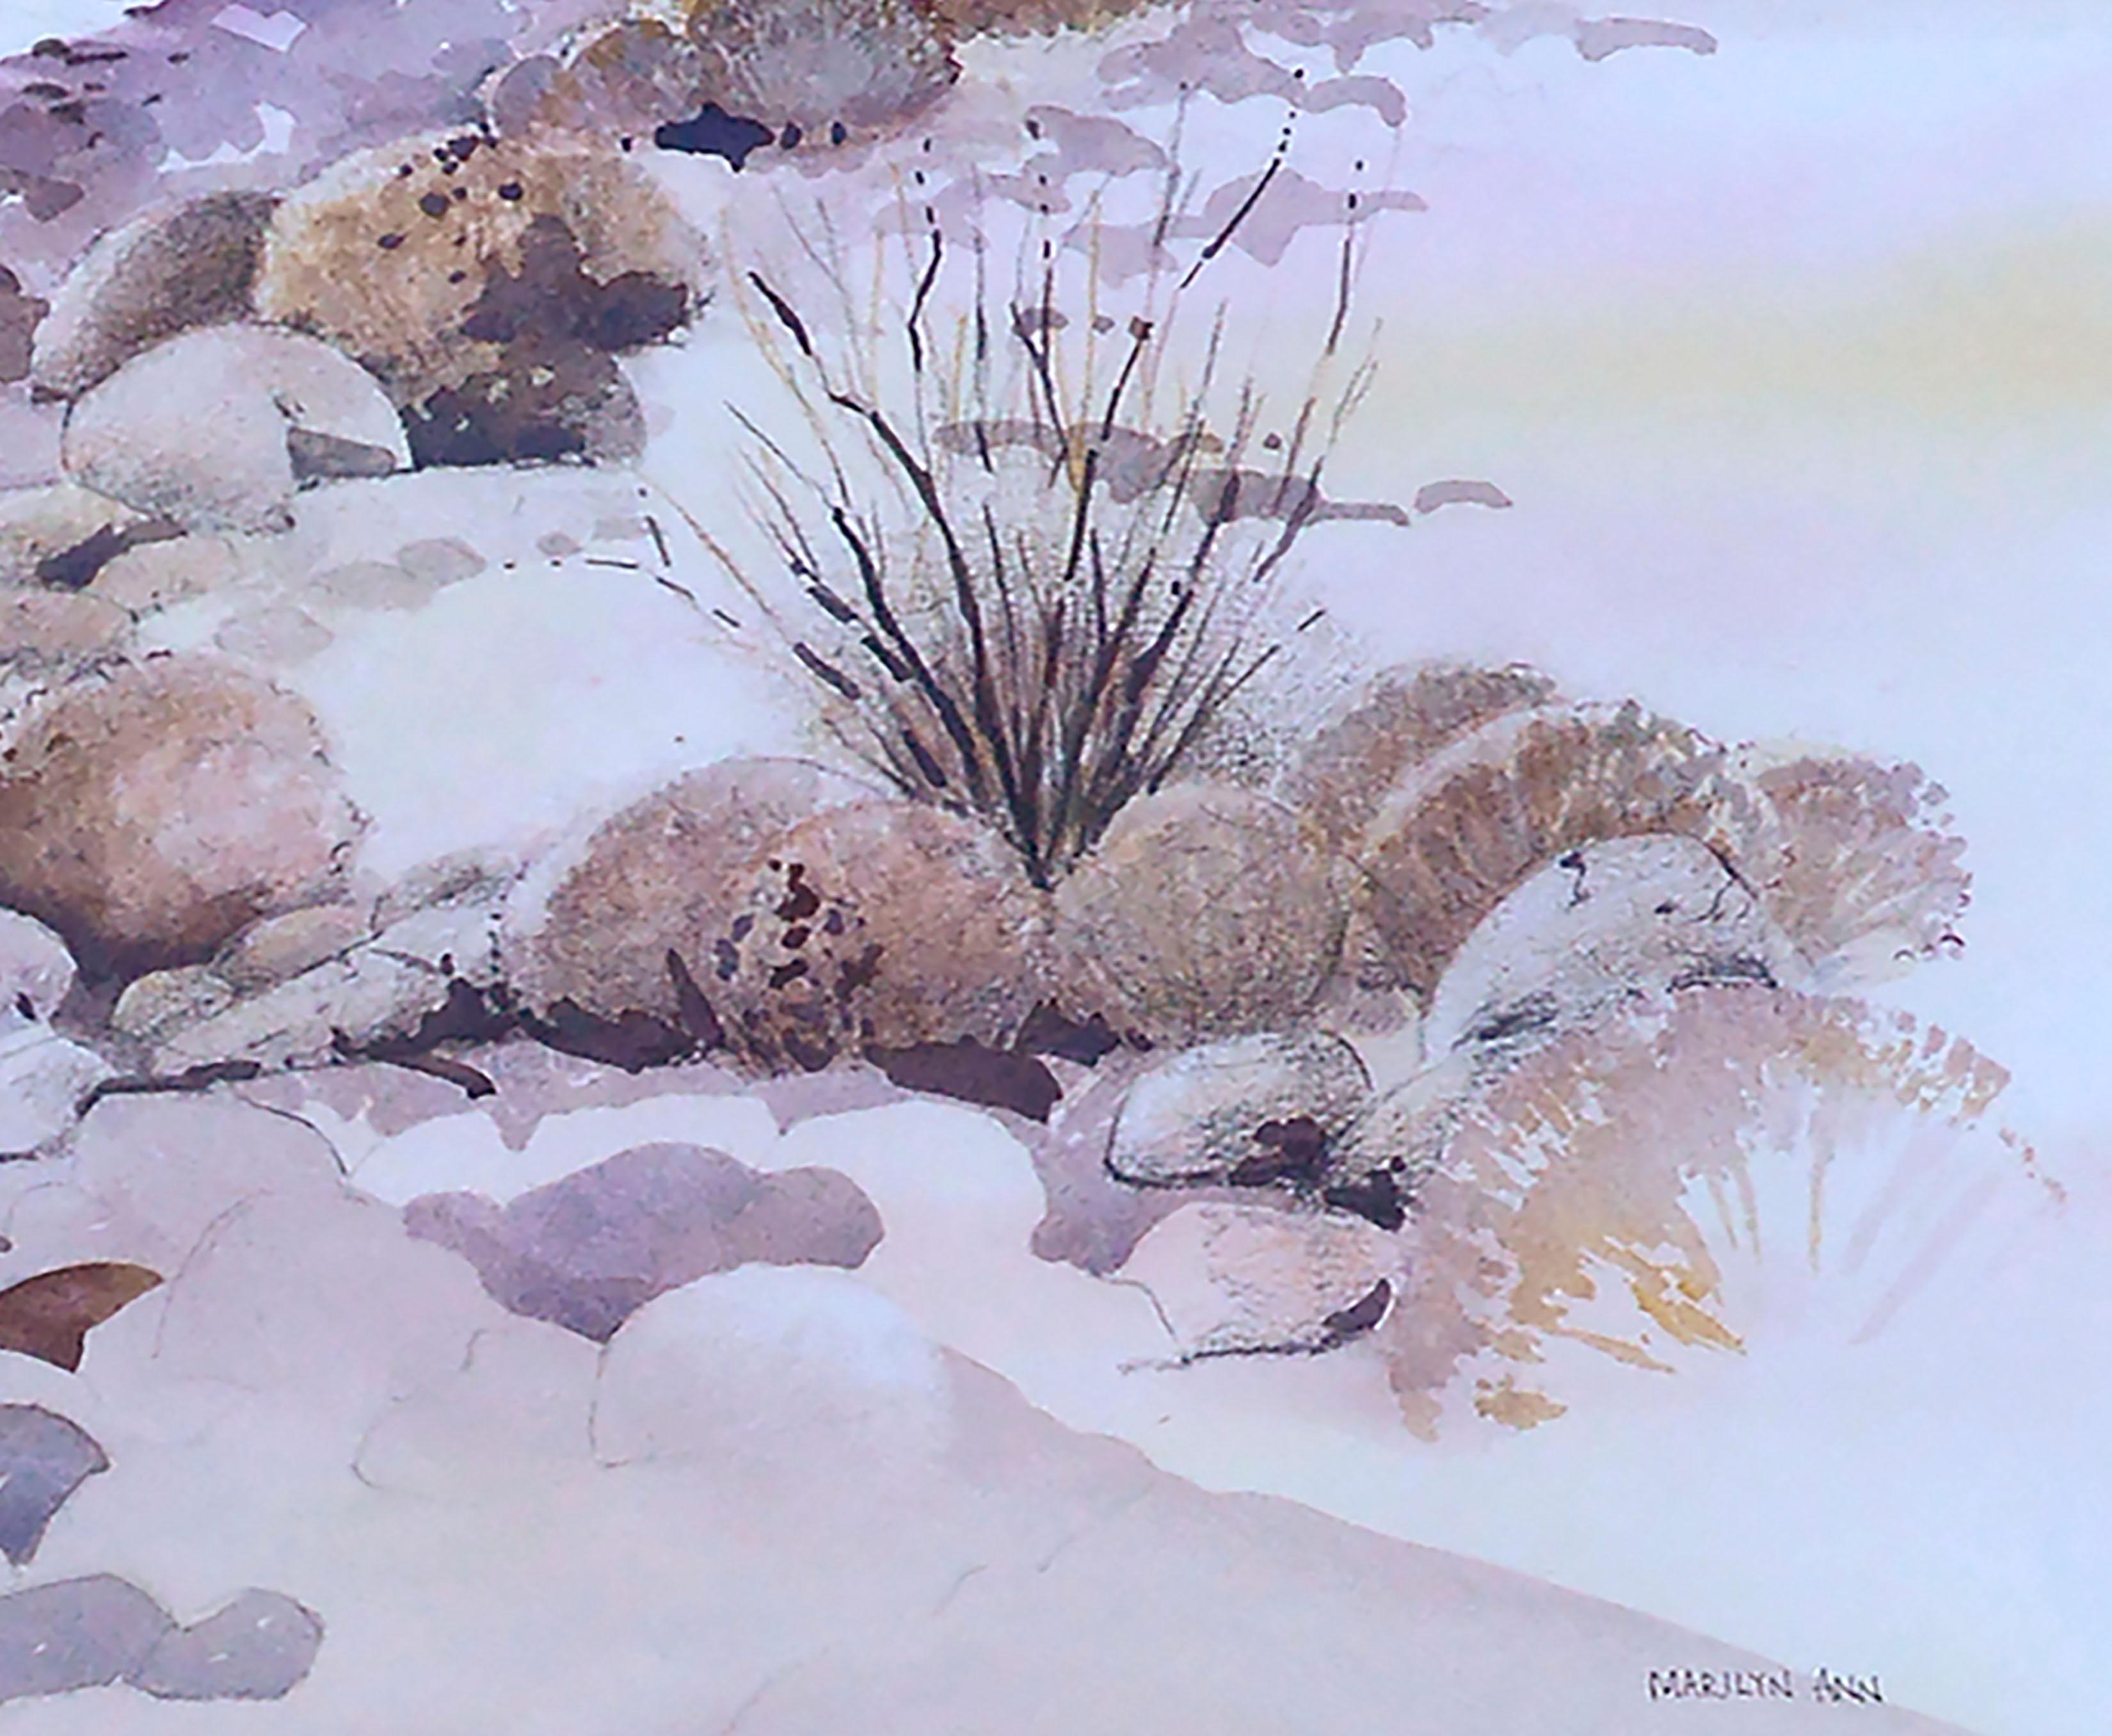 Schöne Aquarelllandschaft eines felsigen Arroyo mit einheimischen Pflanzen und entfernten Bergen in der Nähe des Death Valley National Park, Kalifornien, von der kalifornischen Künstlerin Marilyn Ann Deeds (Amerikanerin, 20. Jahrhundert). Signiert